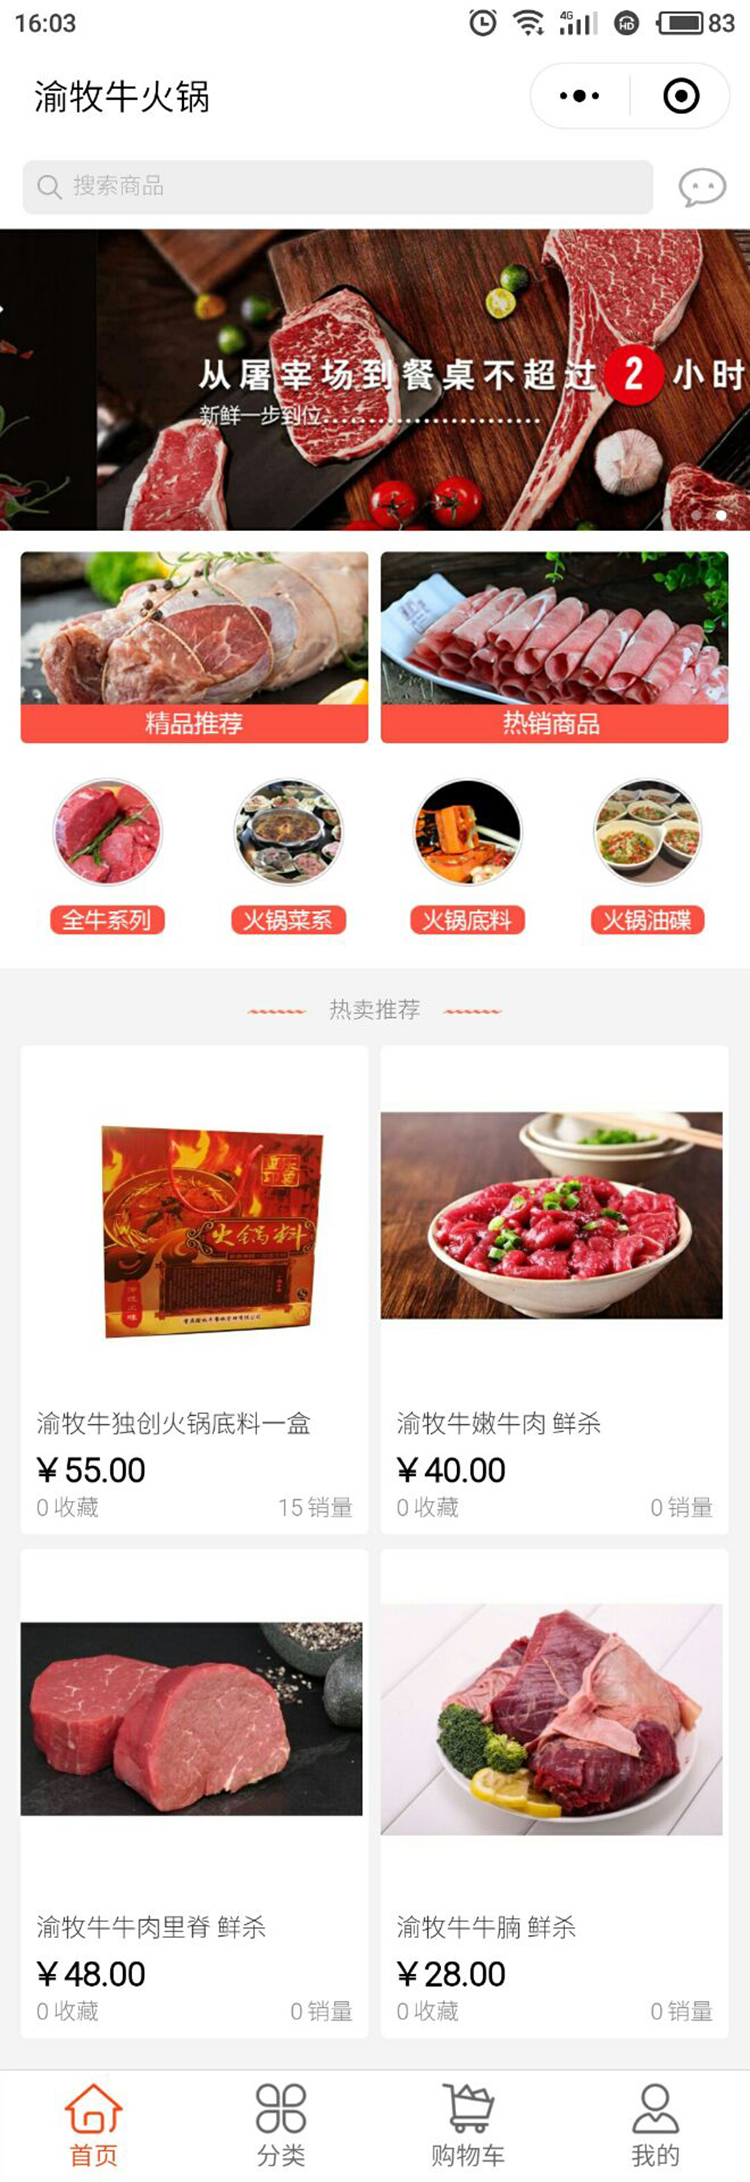 餐饮红色重庆-渝牧牛火锅-商城小程序高级版.jpg